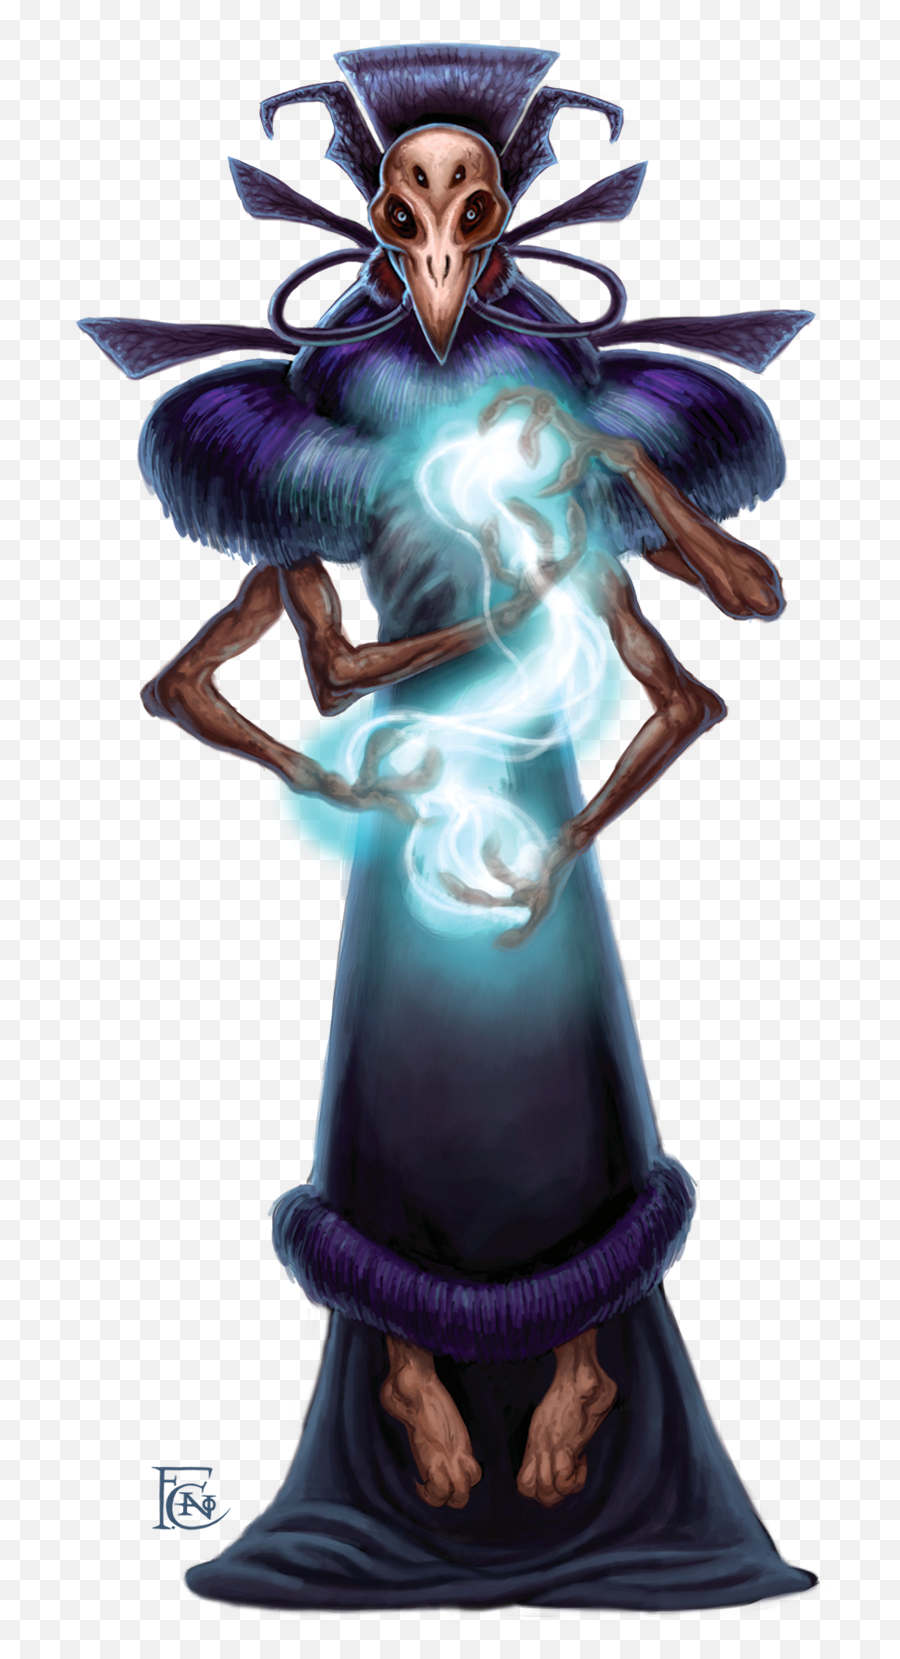 Download Sorcerer Png Image With No - Action Figure,Sorcerer Png